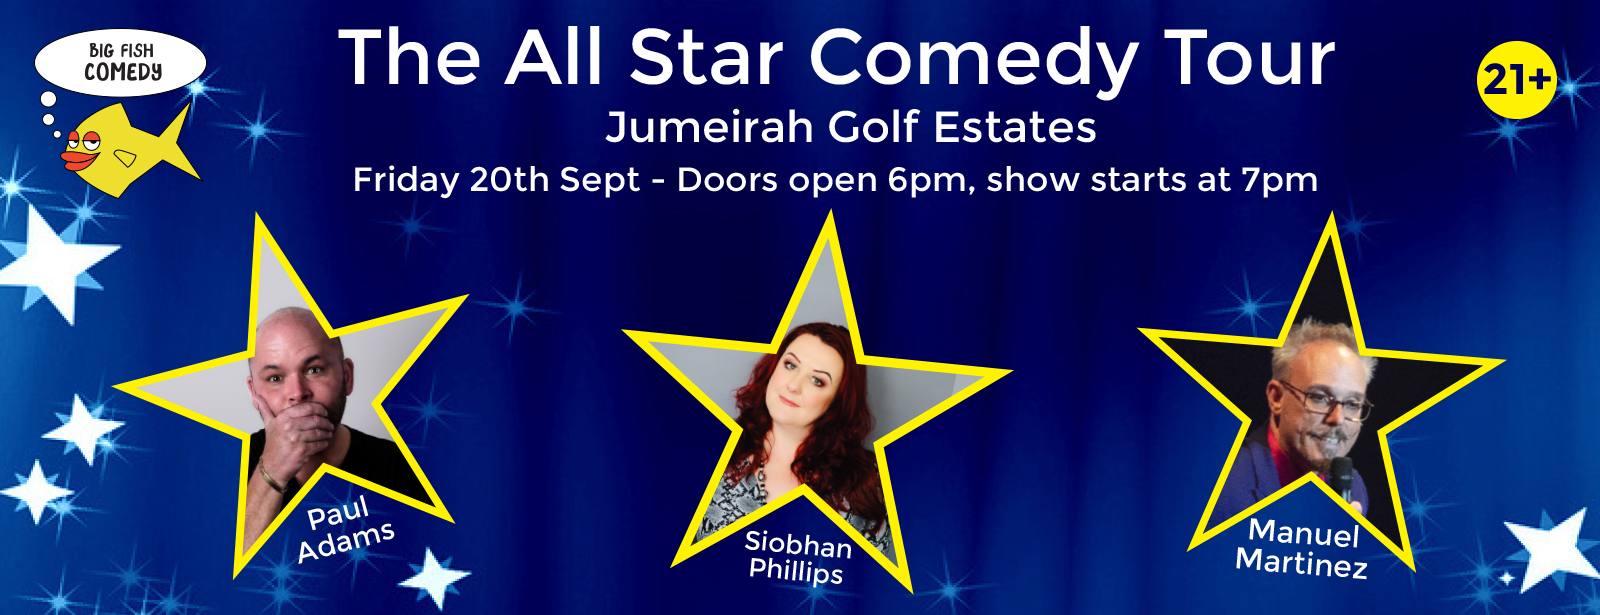 The All Star Comedy Tour Dubai 2019